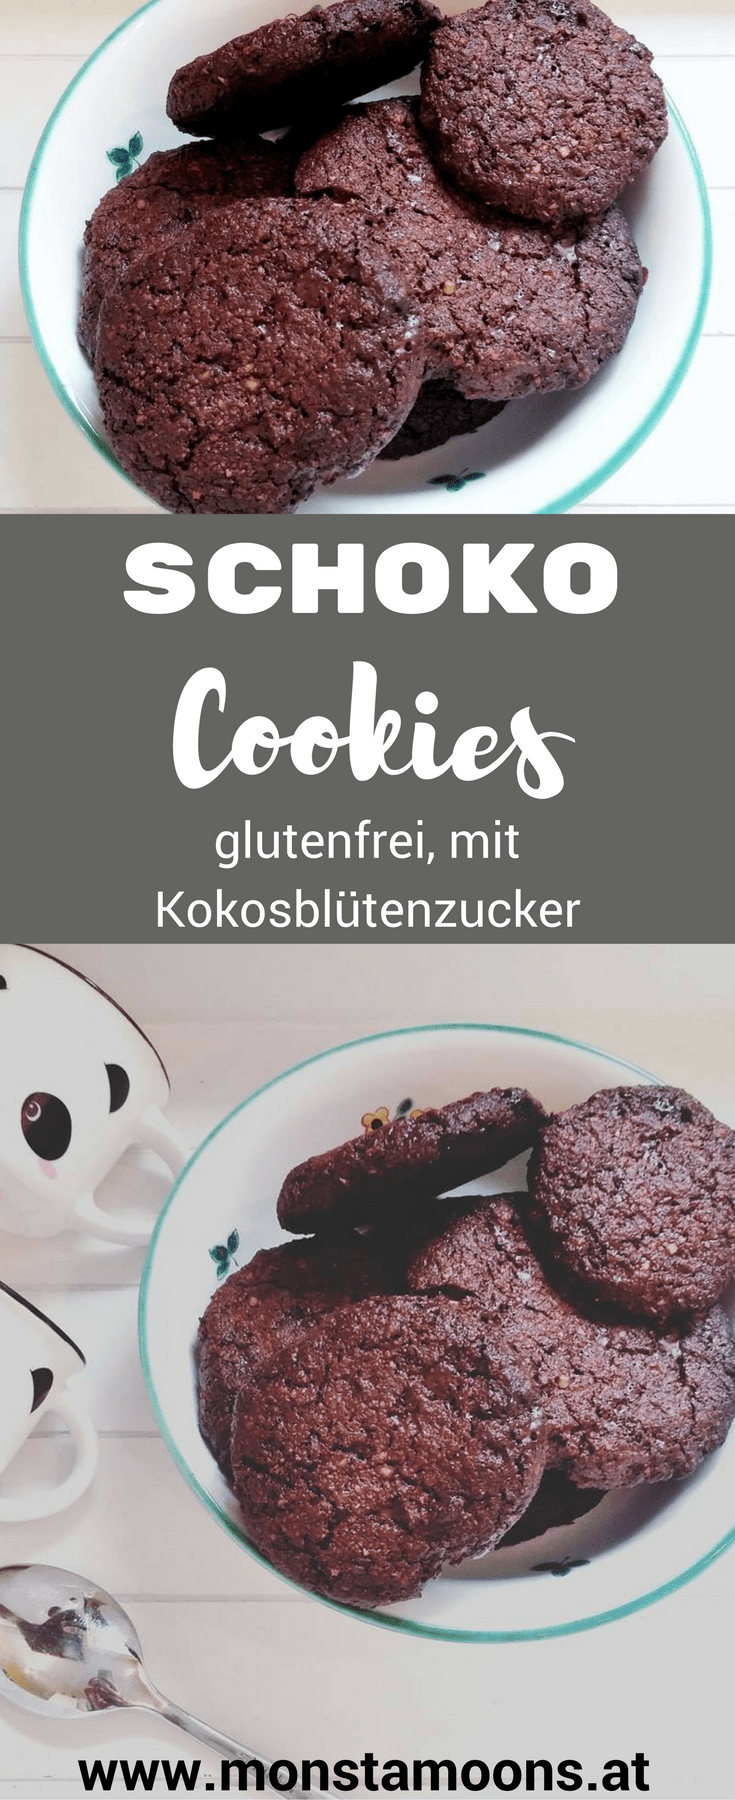 Leckere Schokoladen Cookies mit Kokosblütenzucker - glutenfrei ...